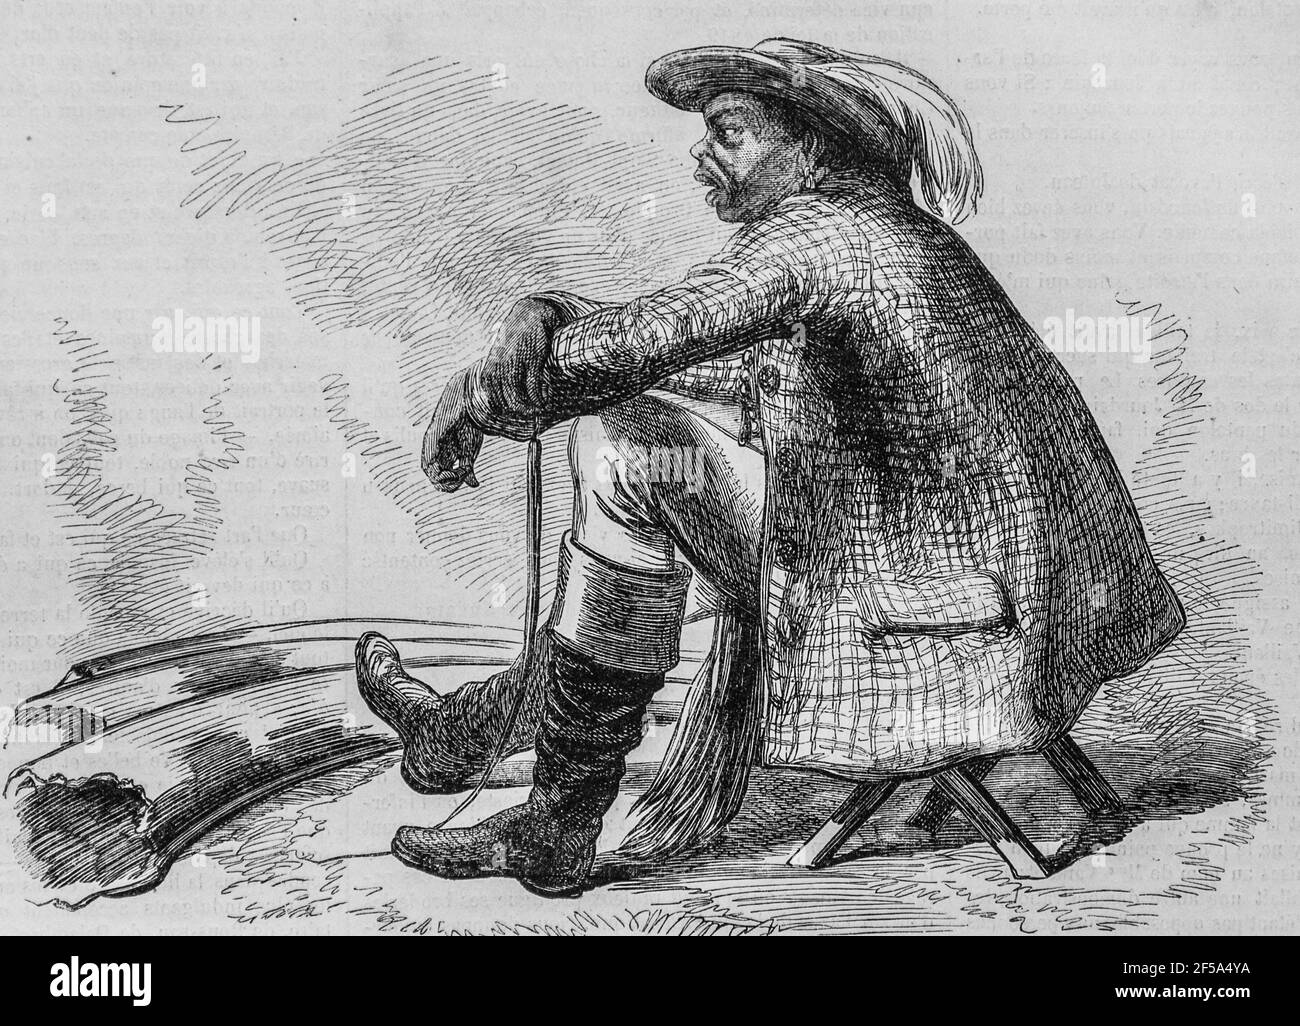 un chef de bechuanas,tribu cafre du cap de bonne esperance, l'univers illustre,editeur michel levy 1868 Stock Photo